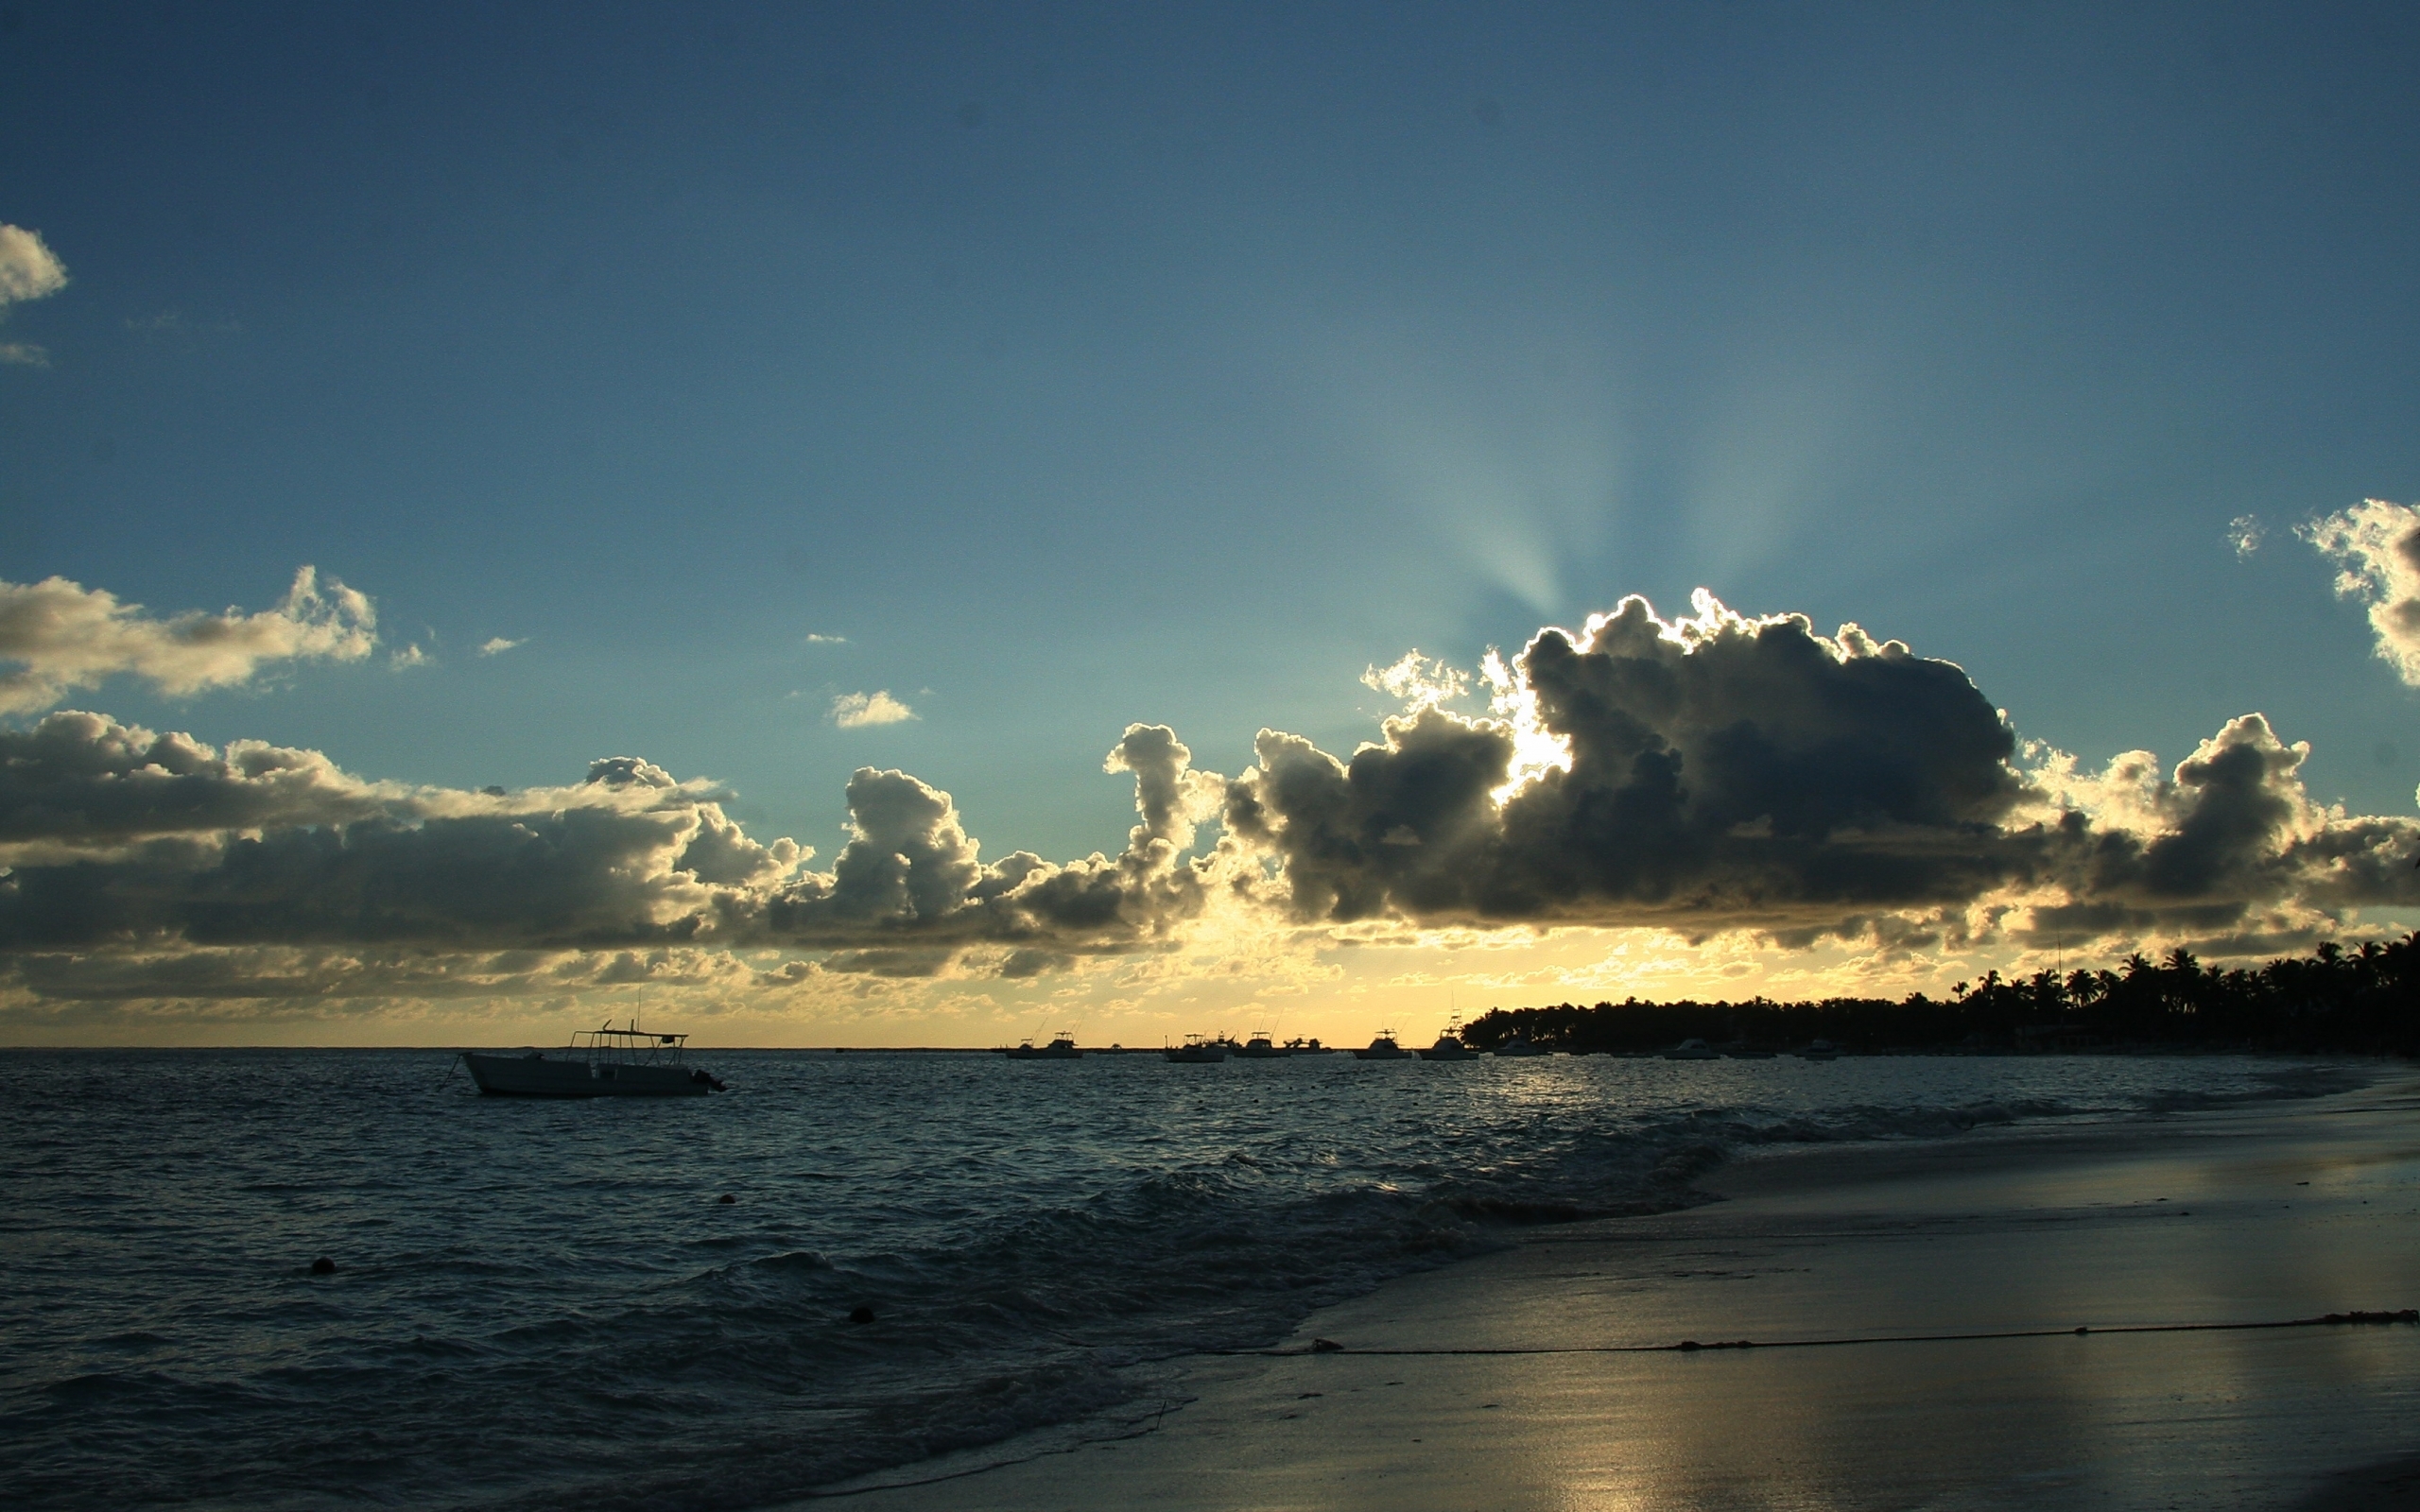 Скачать обои бесплатно Облака, Солнце, Море, Пляж, Пейзаж картинка на рабочий стол ПК